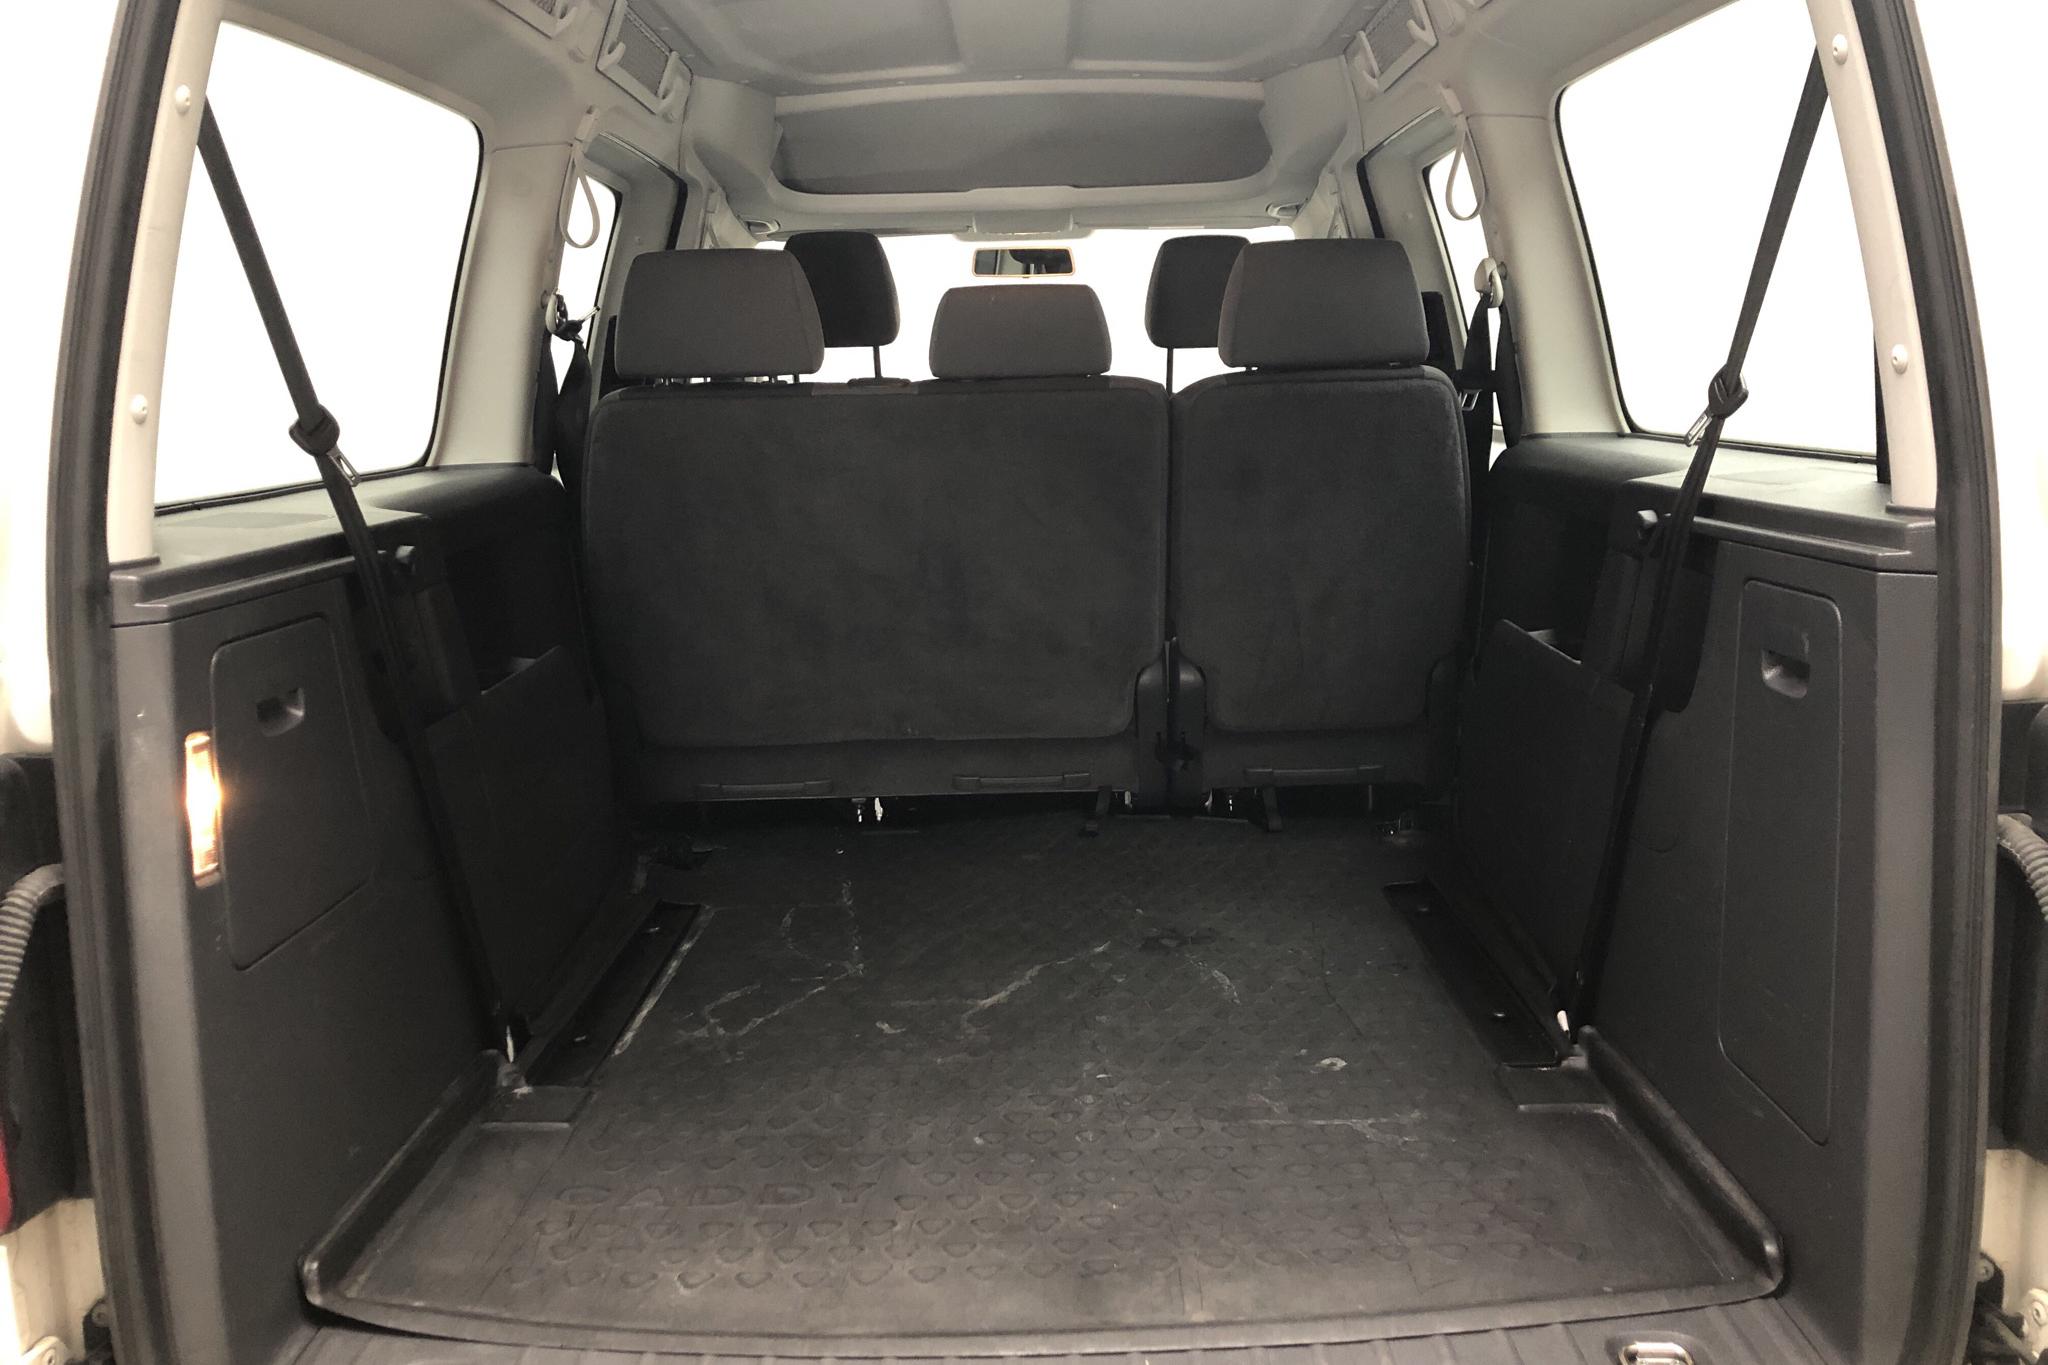 VW Caddy MPV Maxi 1.6 TDI (102hk) - 8 587 mil - Automat - vit - 2015